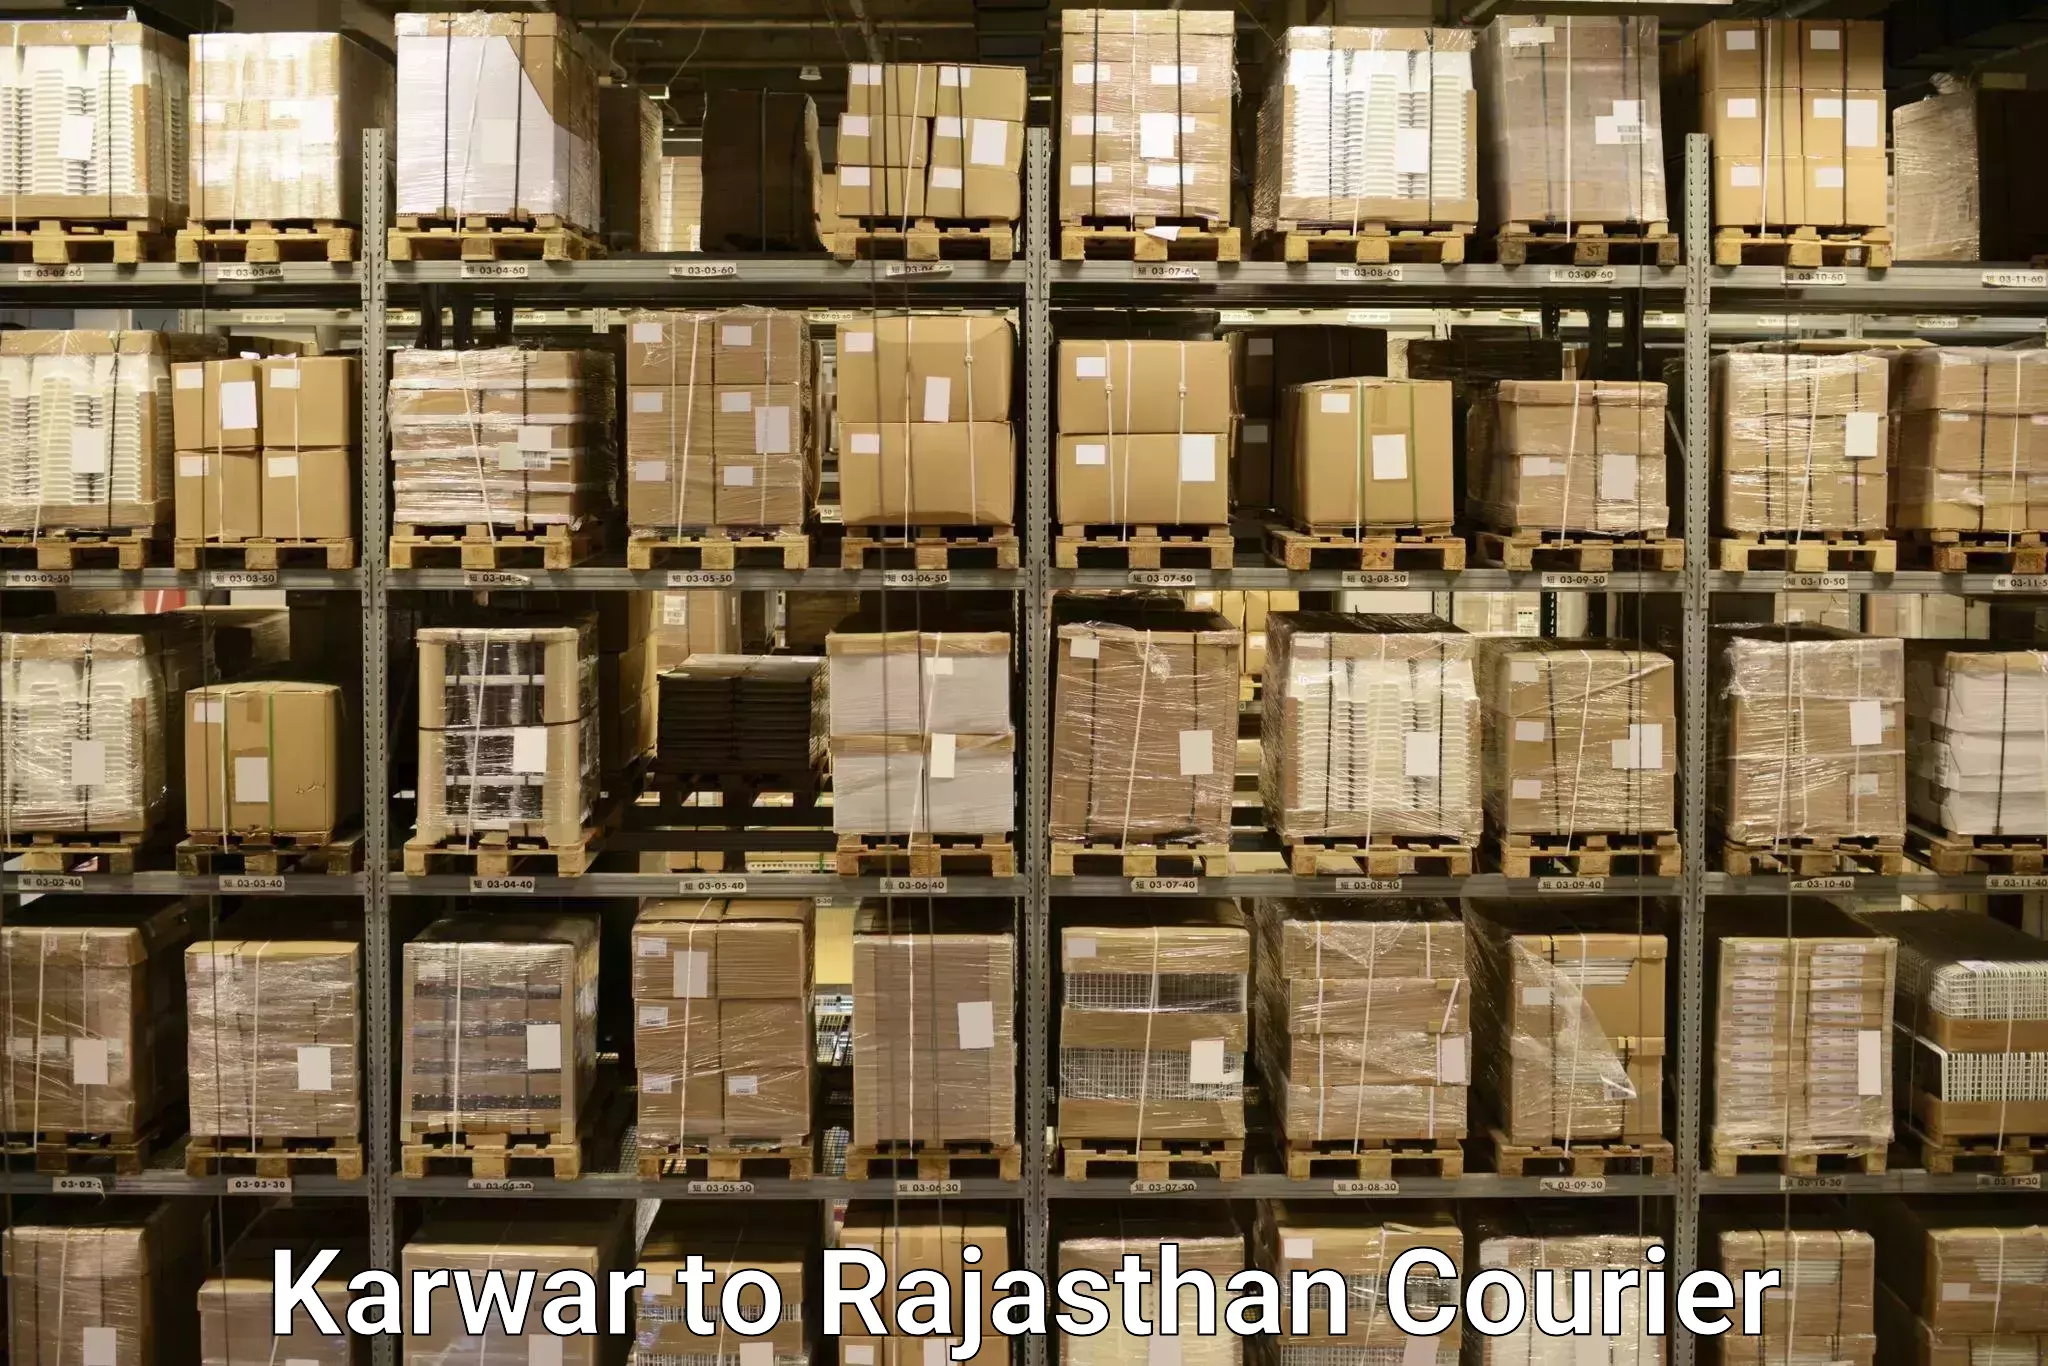 Baggage shipping service Karwar to Rajasthan